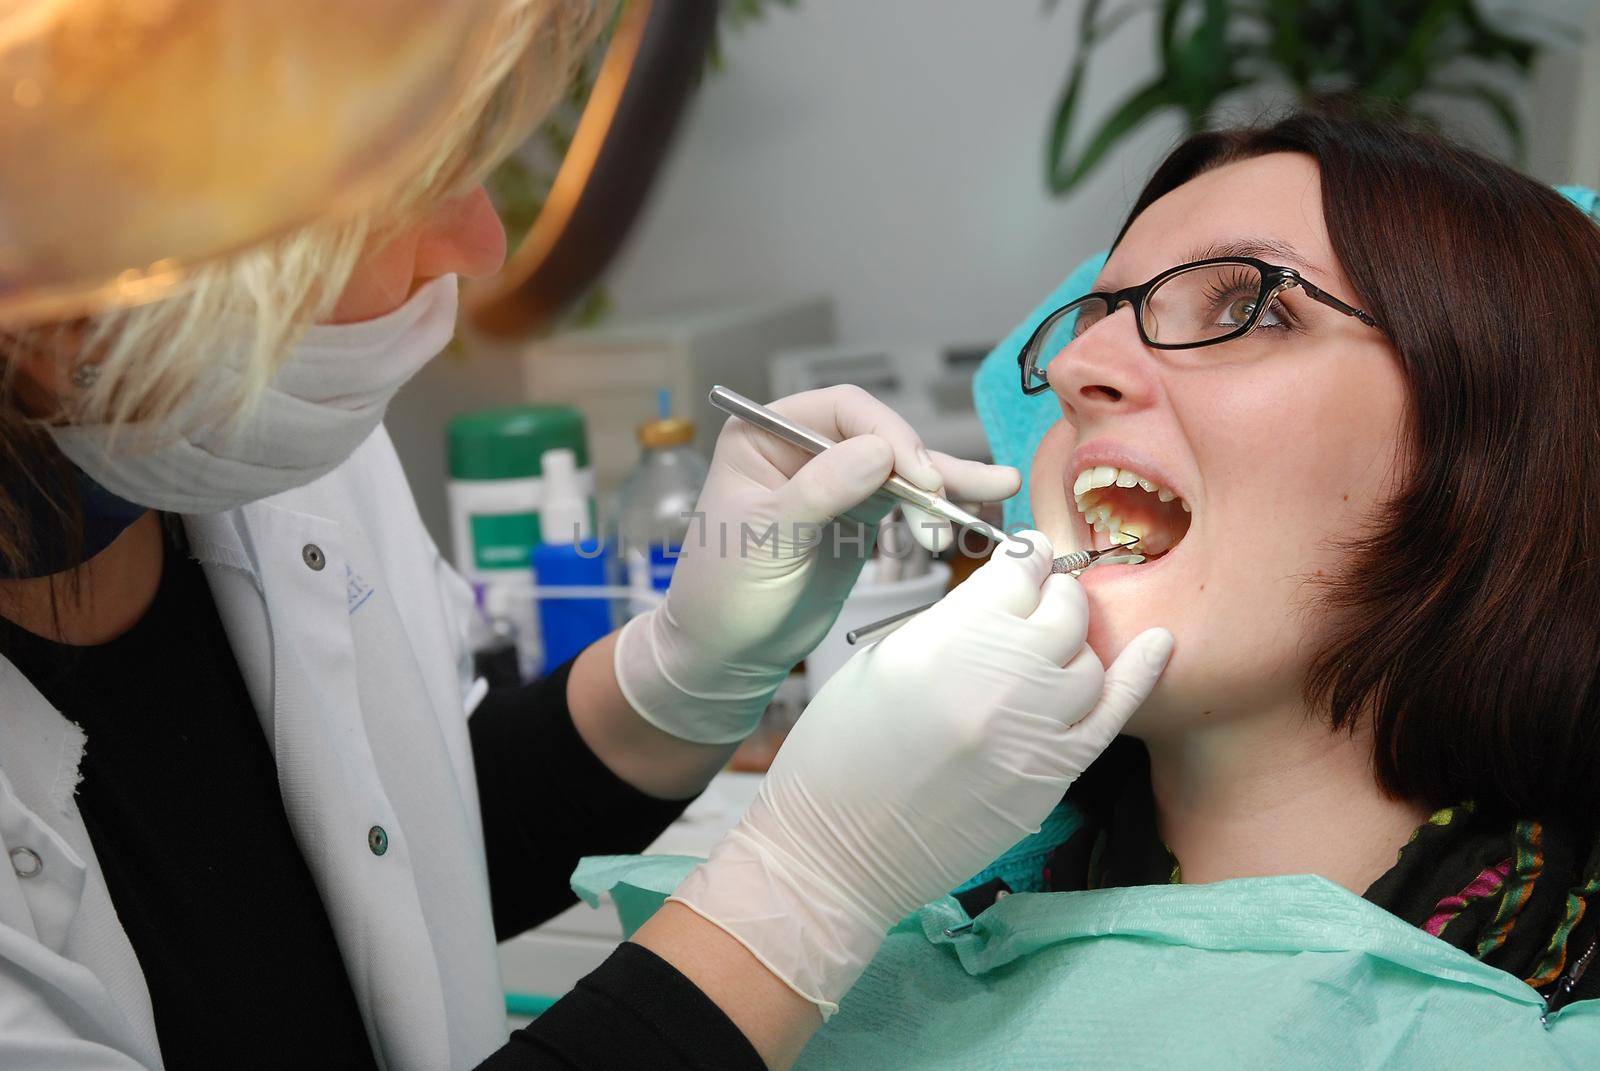 at dentist by dotshock